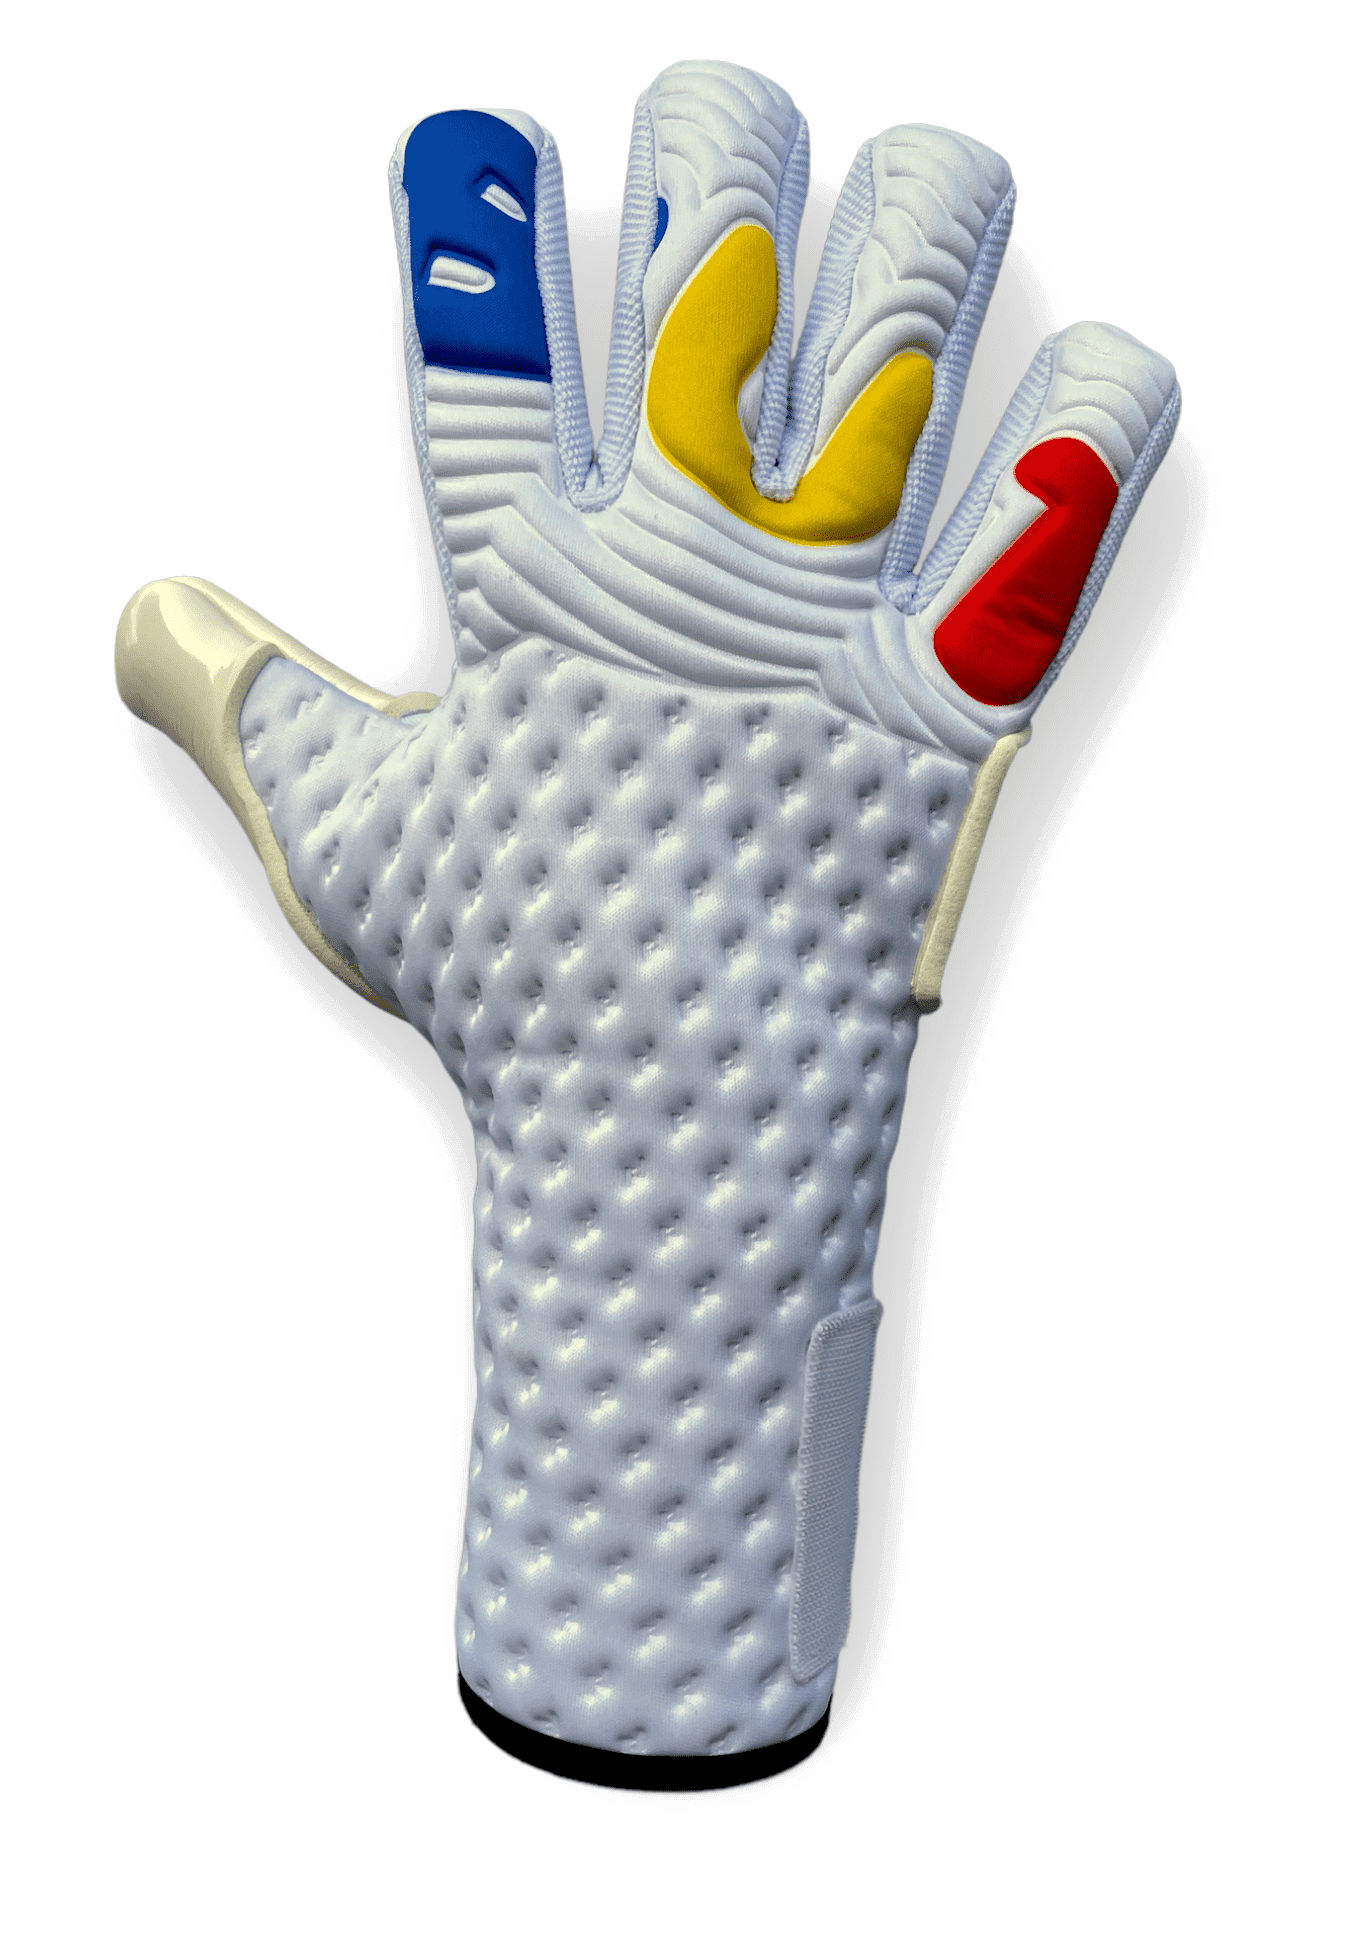 Goalkeeper's gloves BU1 Light D.HOLEC NC